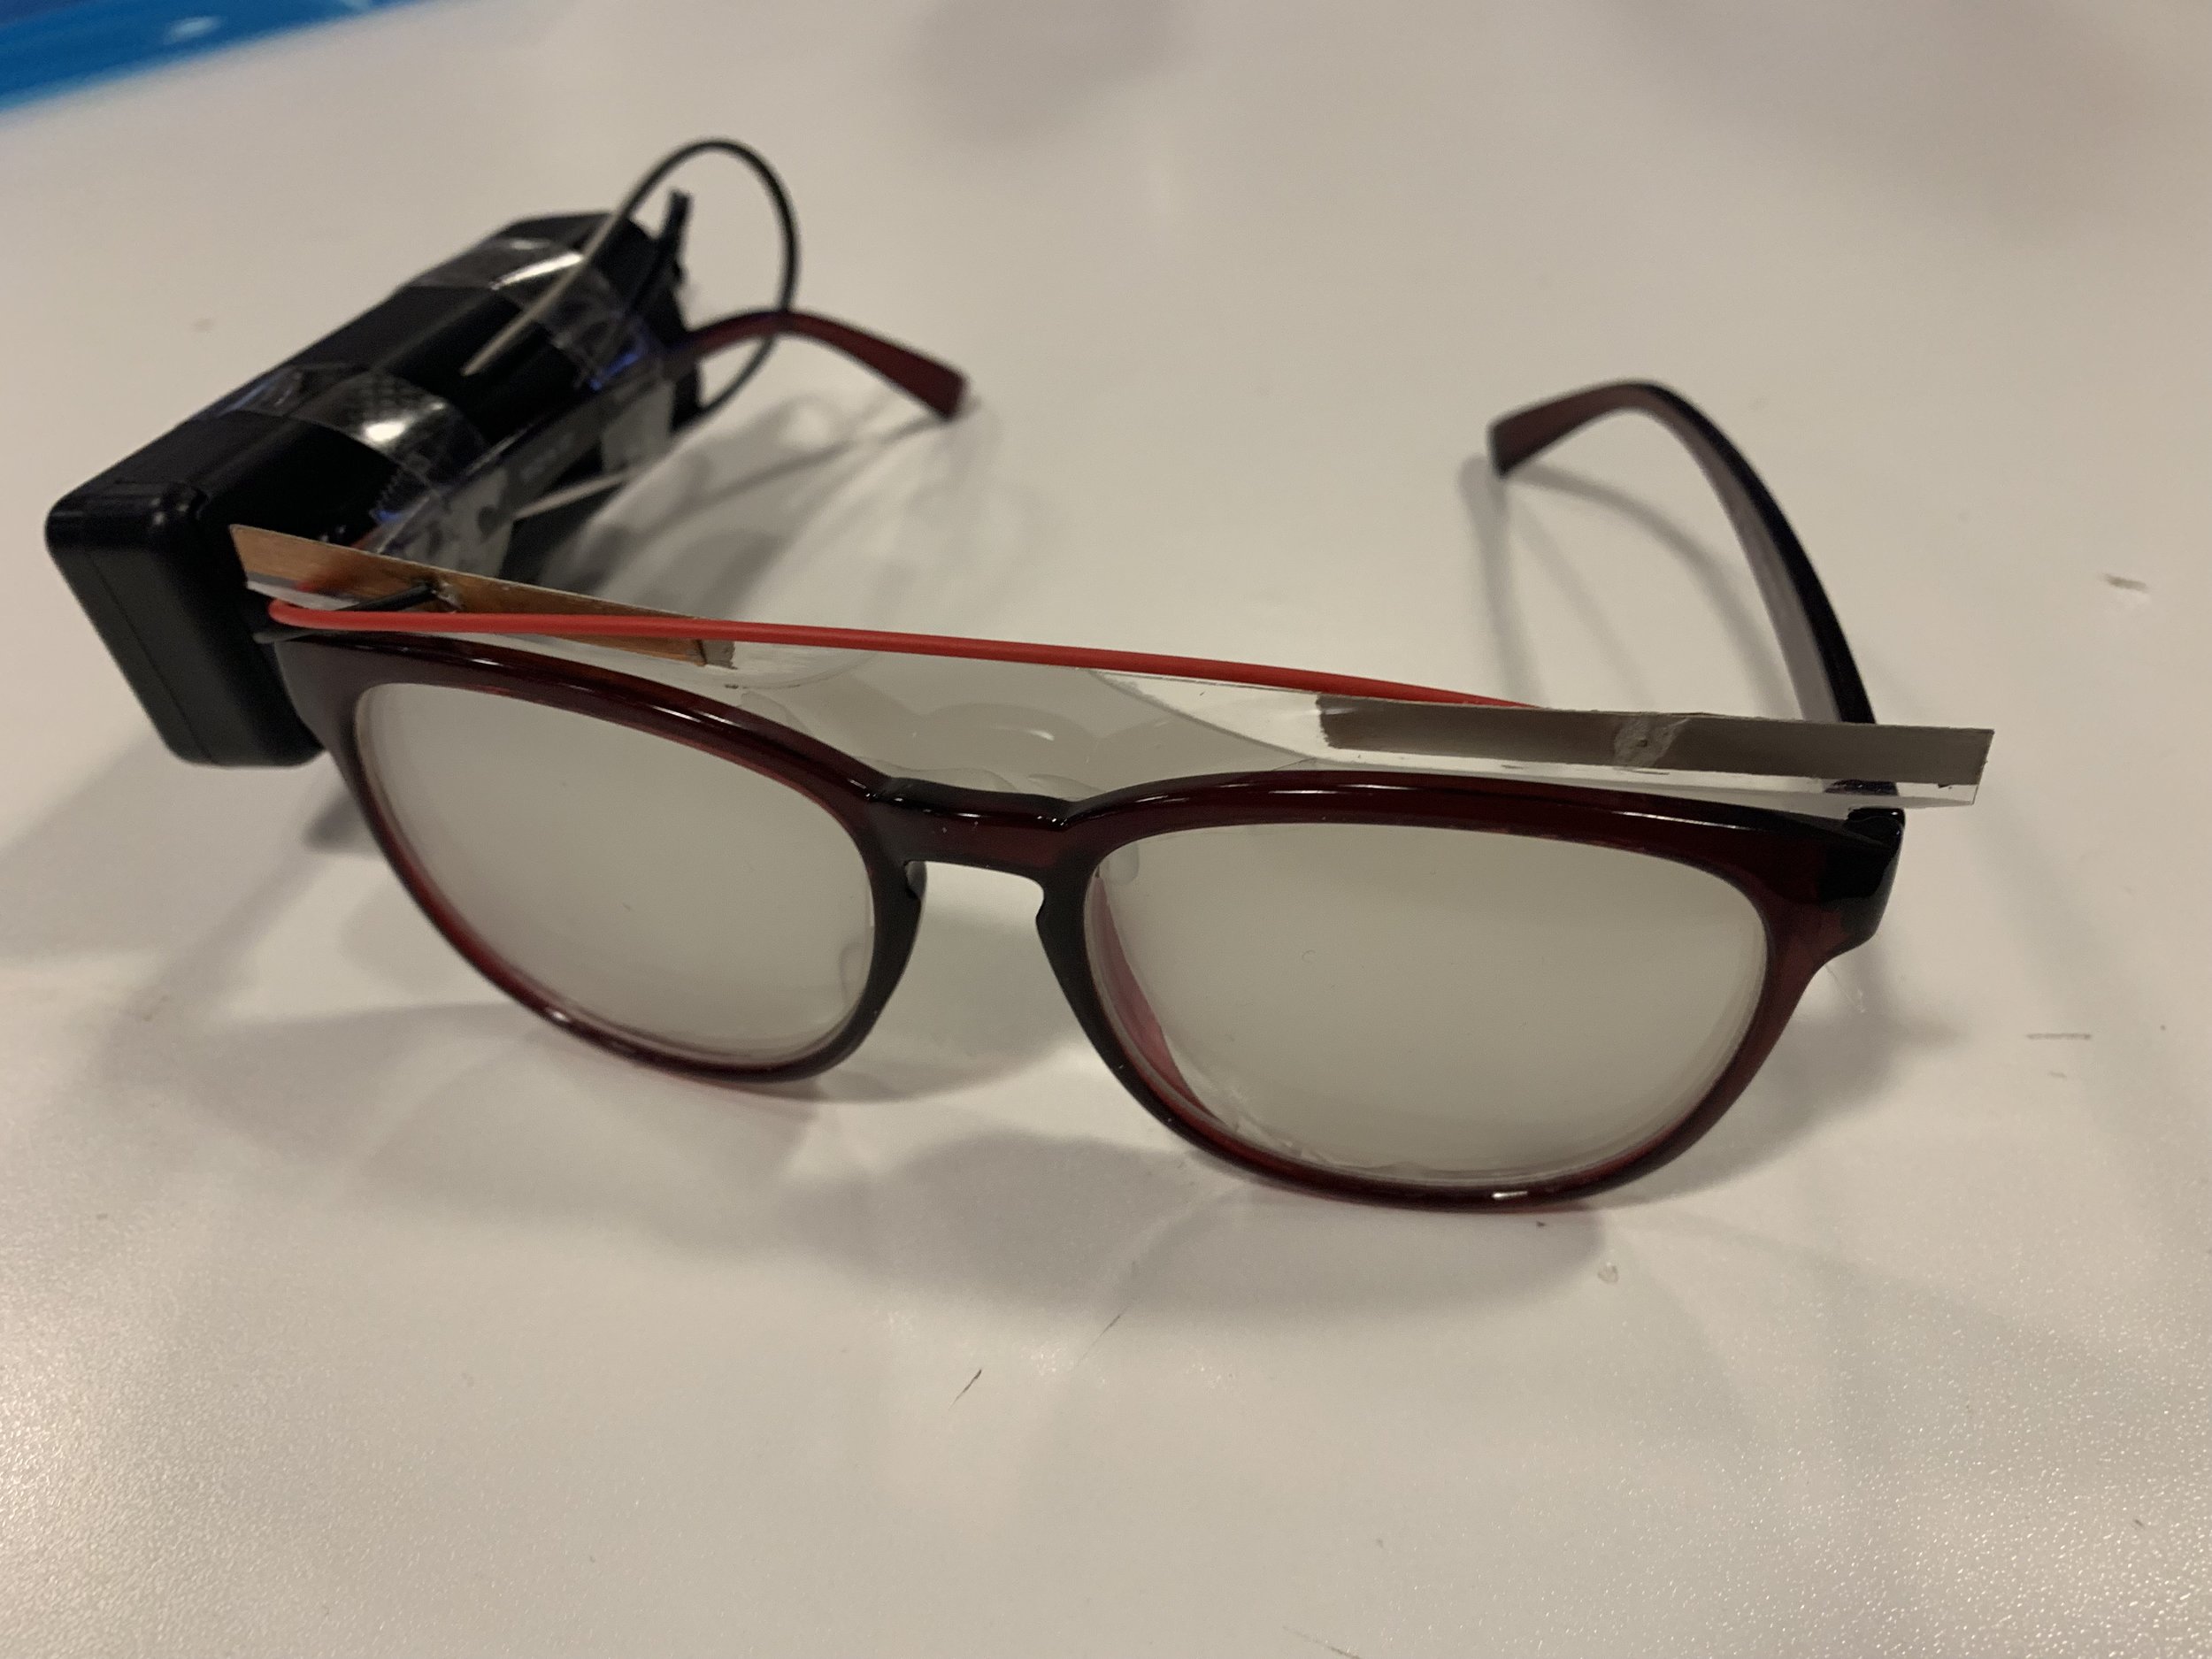 Hardware prototype: electrochromic film on glasses lenses